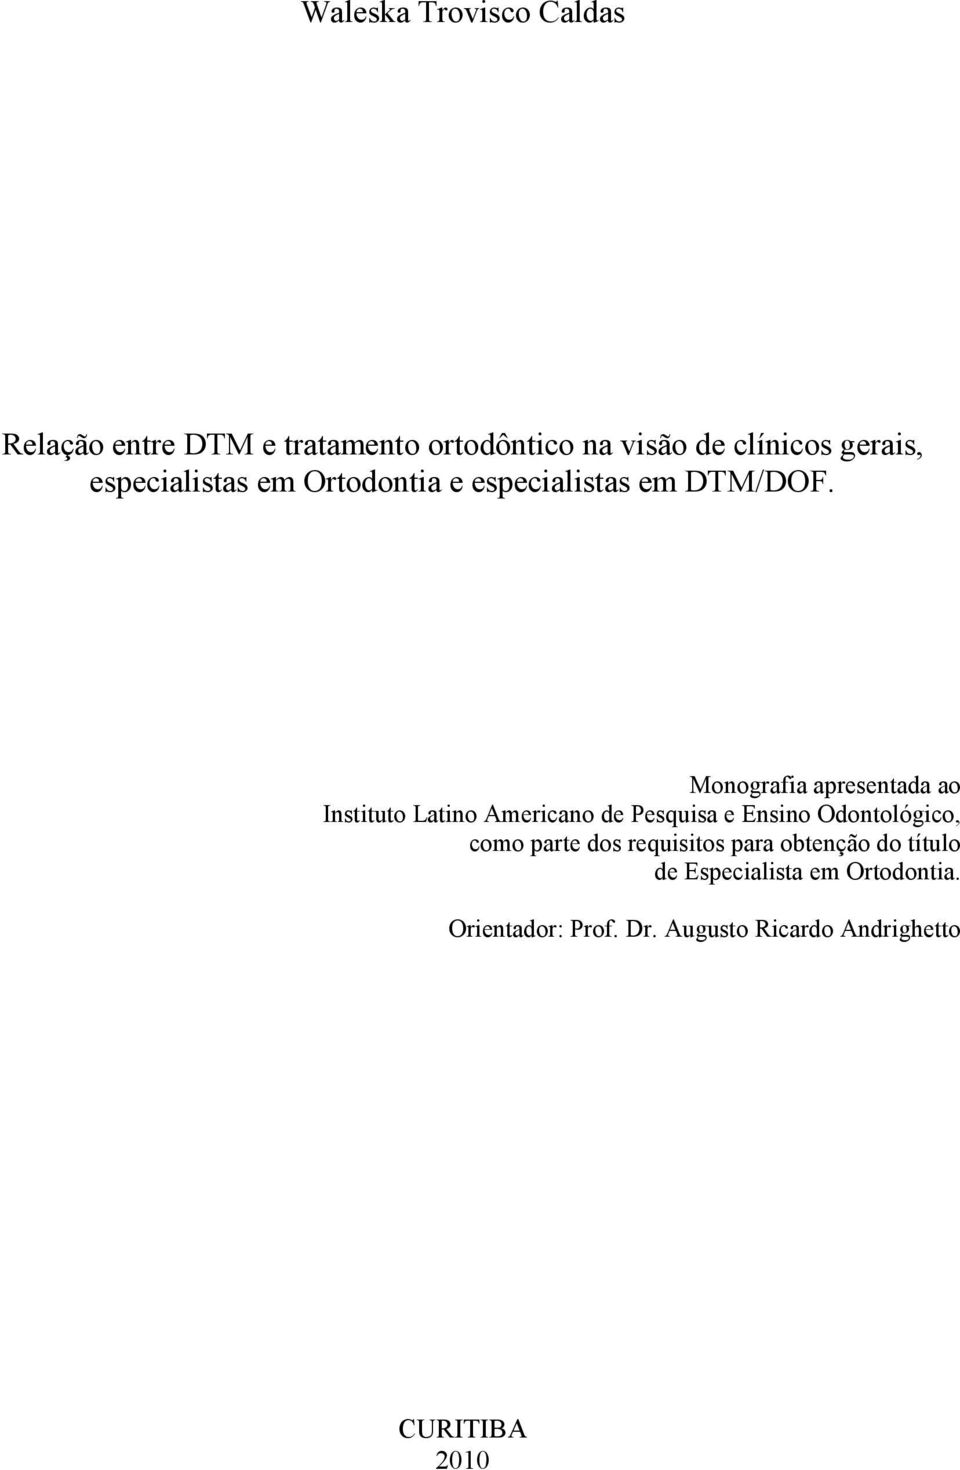 Monografia apresentada ao Instituto Latino Americano de Pesquisa e Ensino Odontológico, como